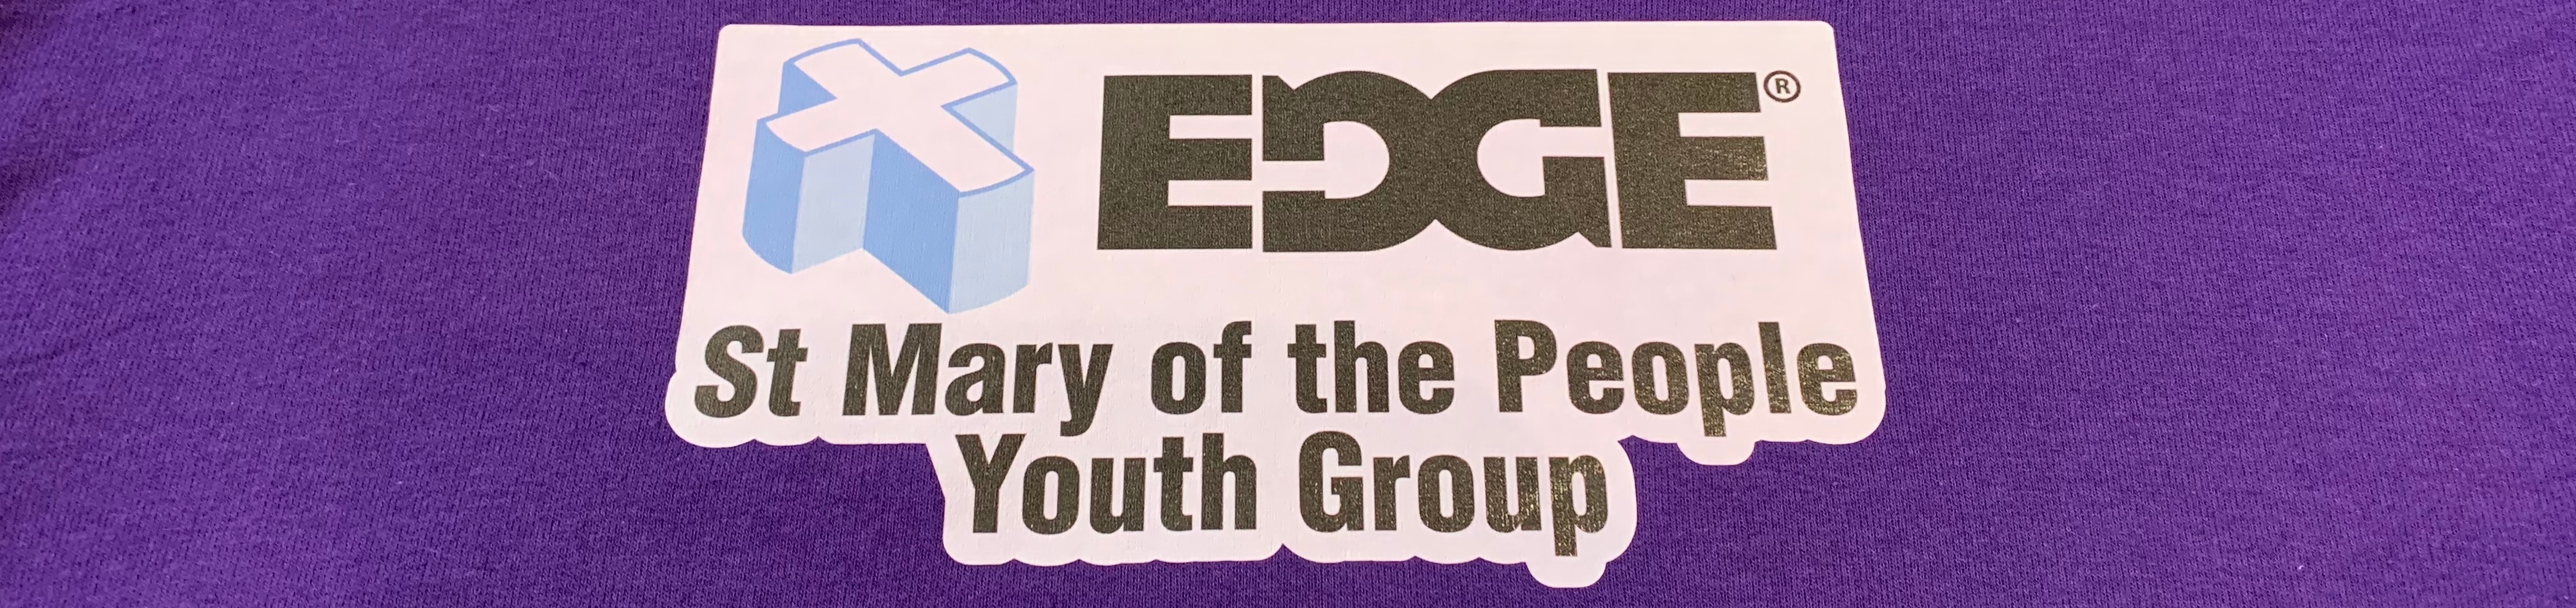 EDGE youth group logo